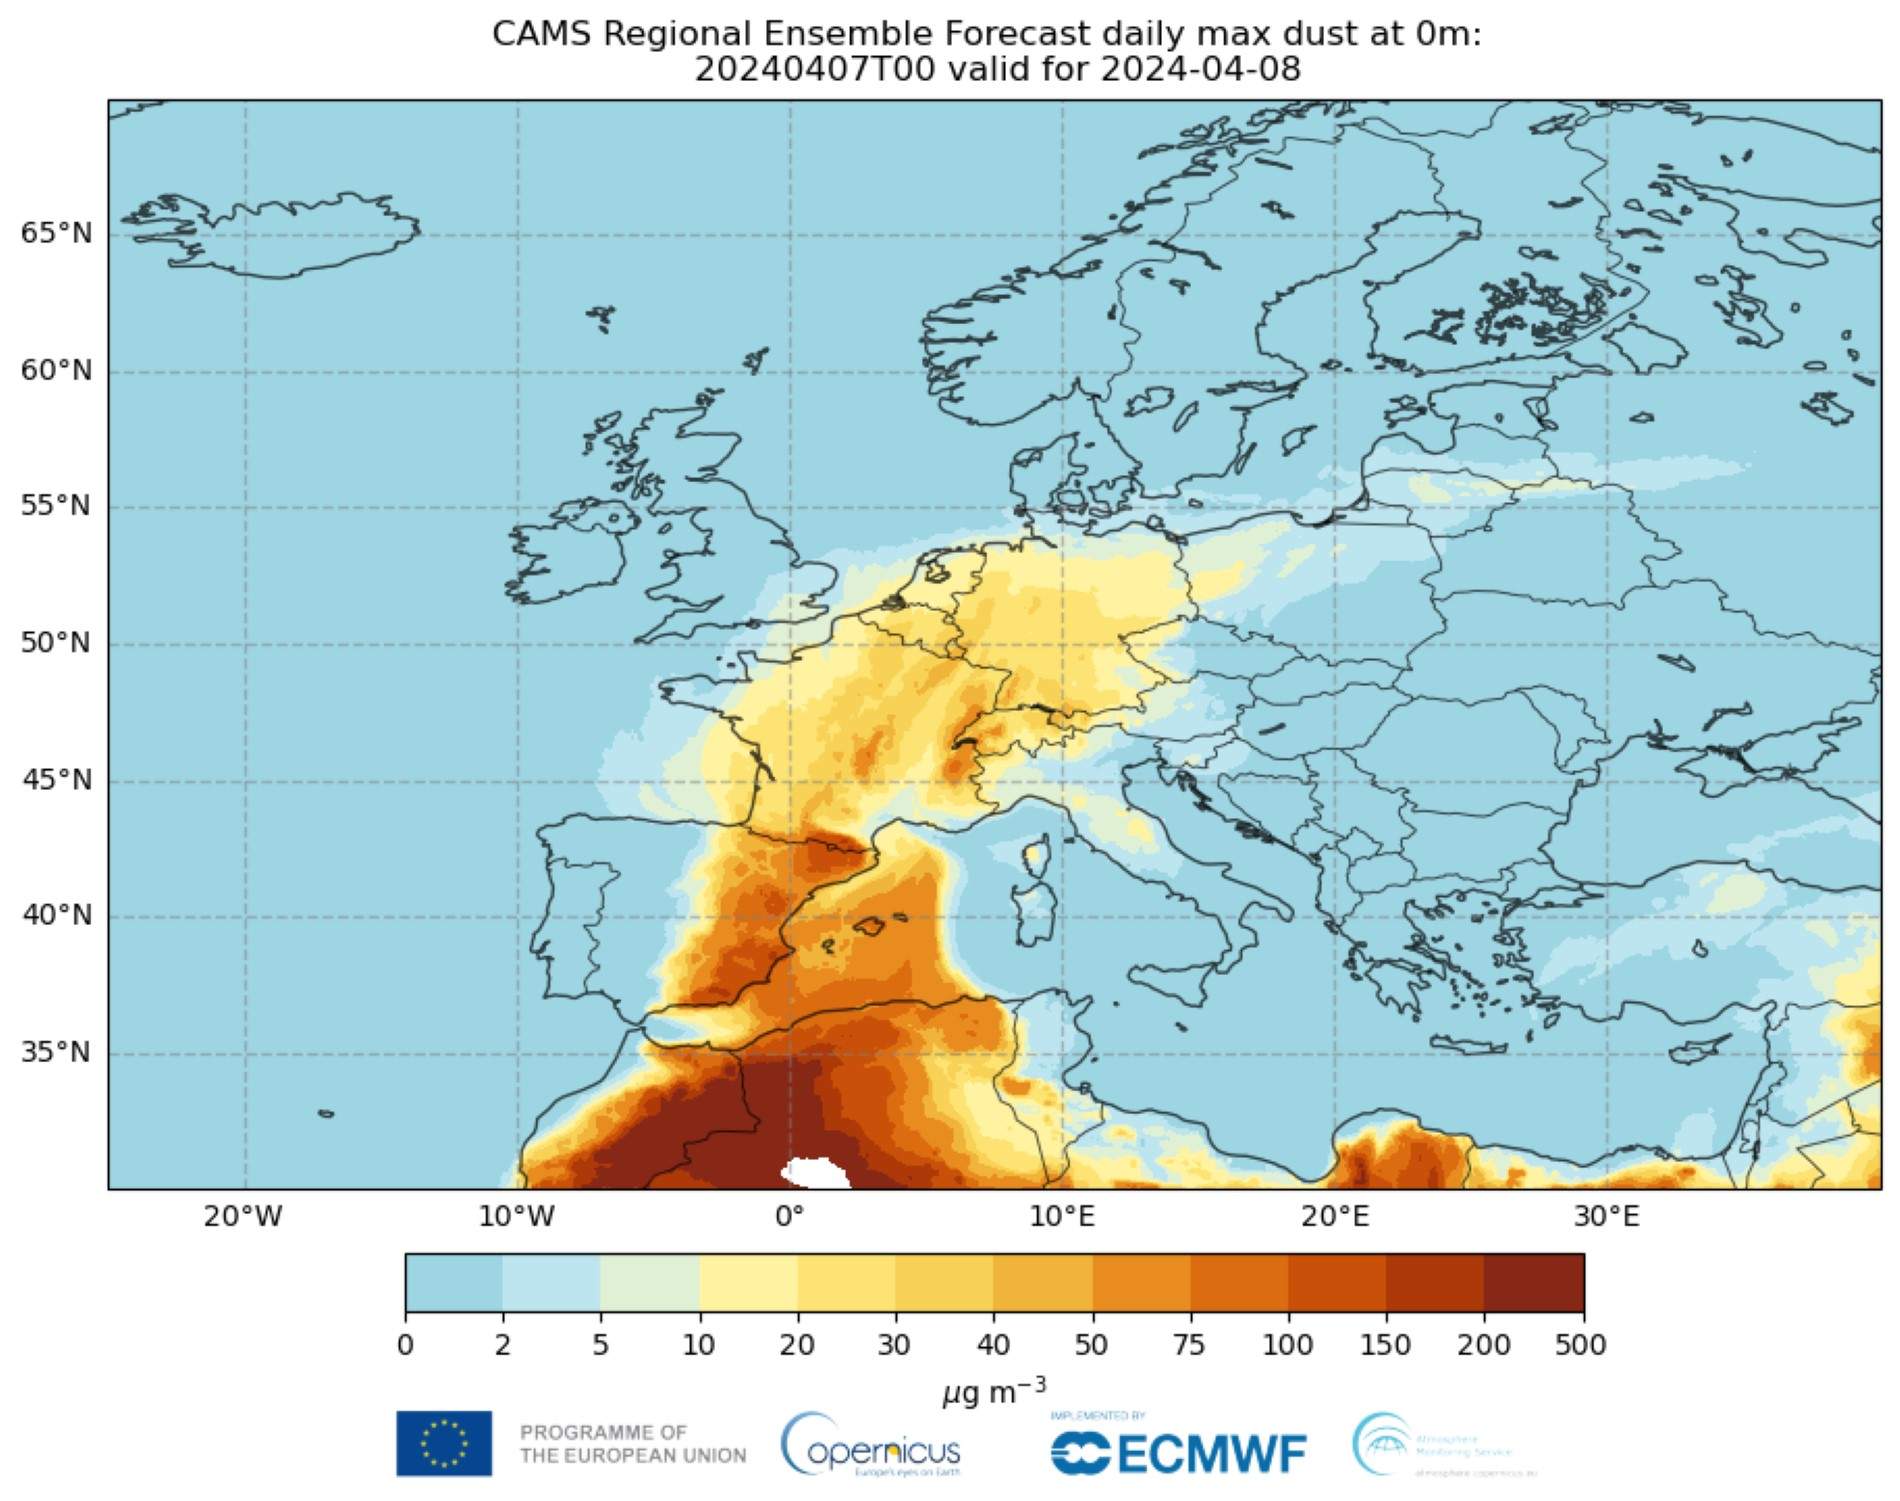 El observatorio Copernicus alerta de que los episodios de polvo sahariano aumentarán en Catalunya